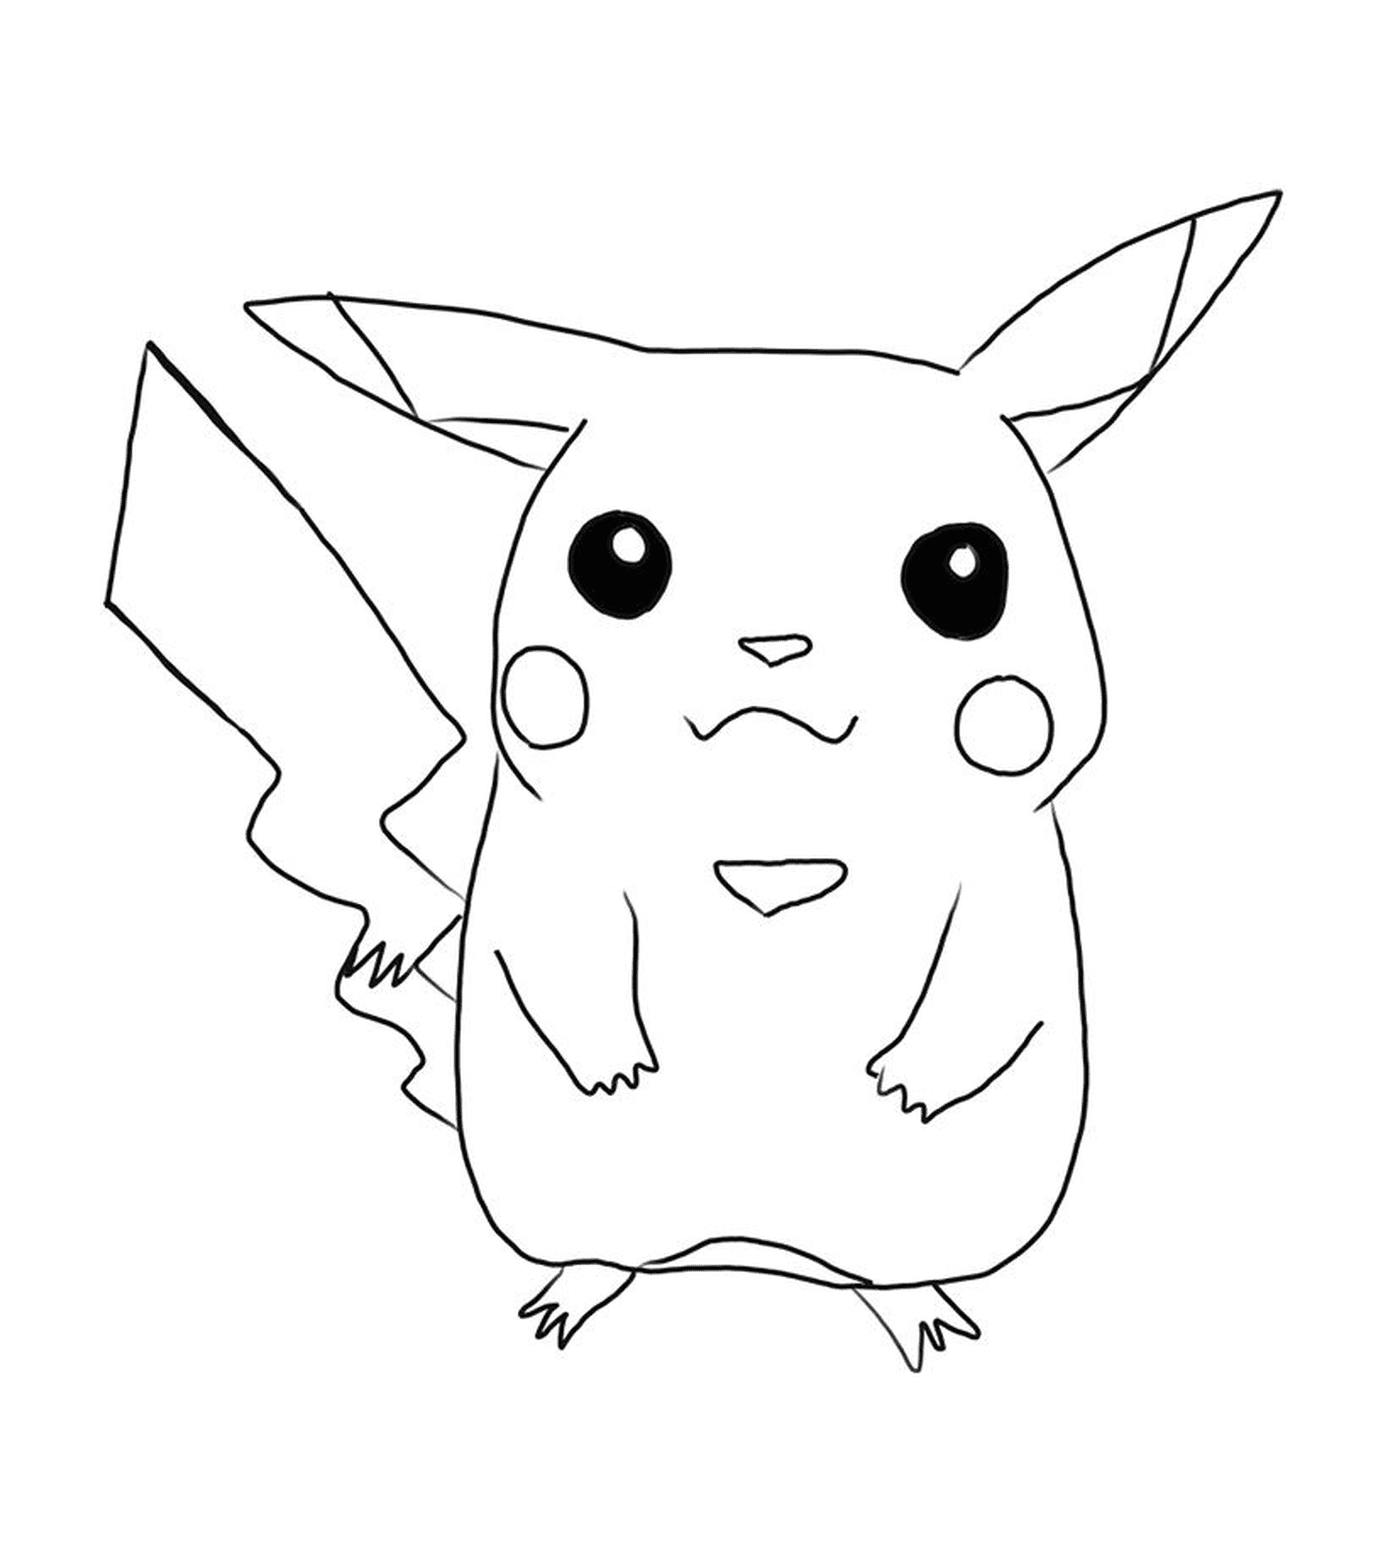   Pikachu, symbole d'adorabilité 